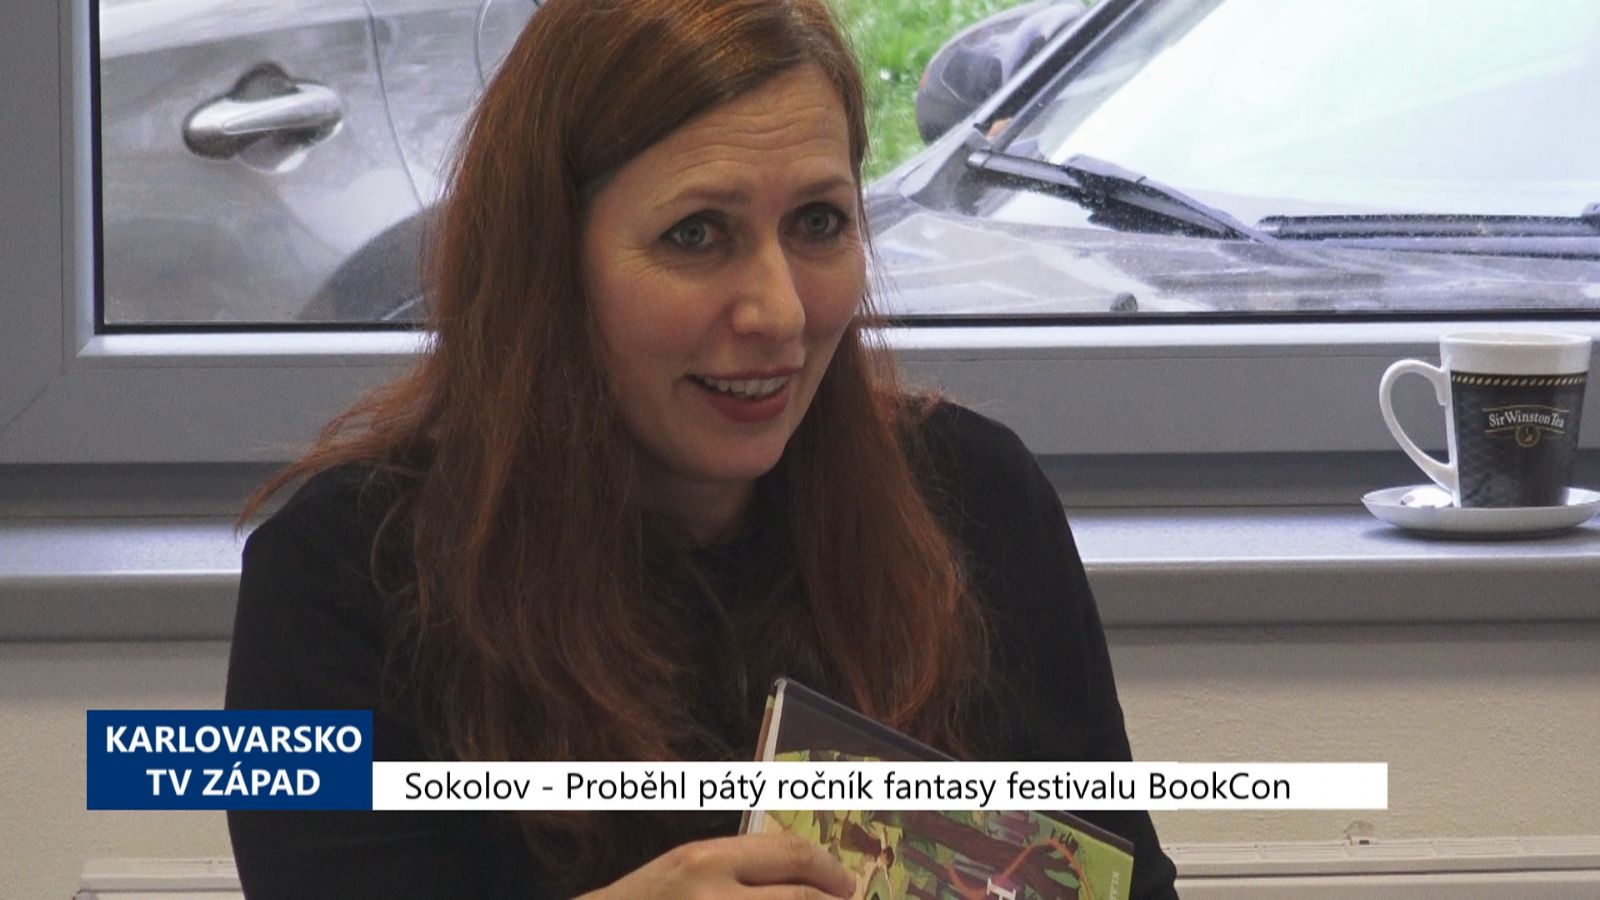 Sokolov: Proběhl pátý ročník fantasy festivalu BookCon (TV Západ)